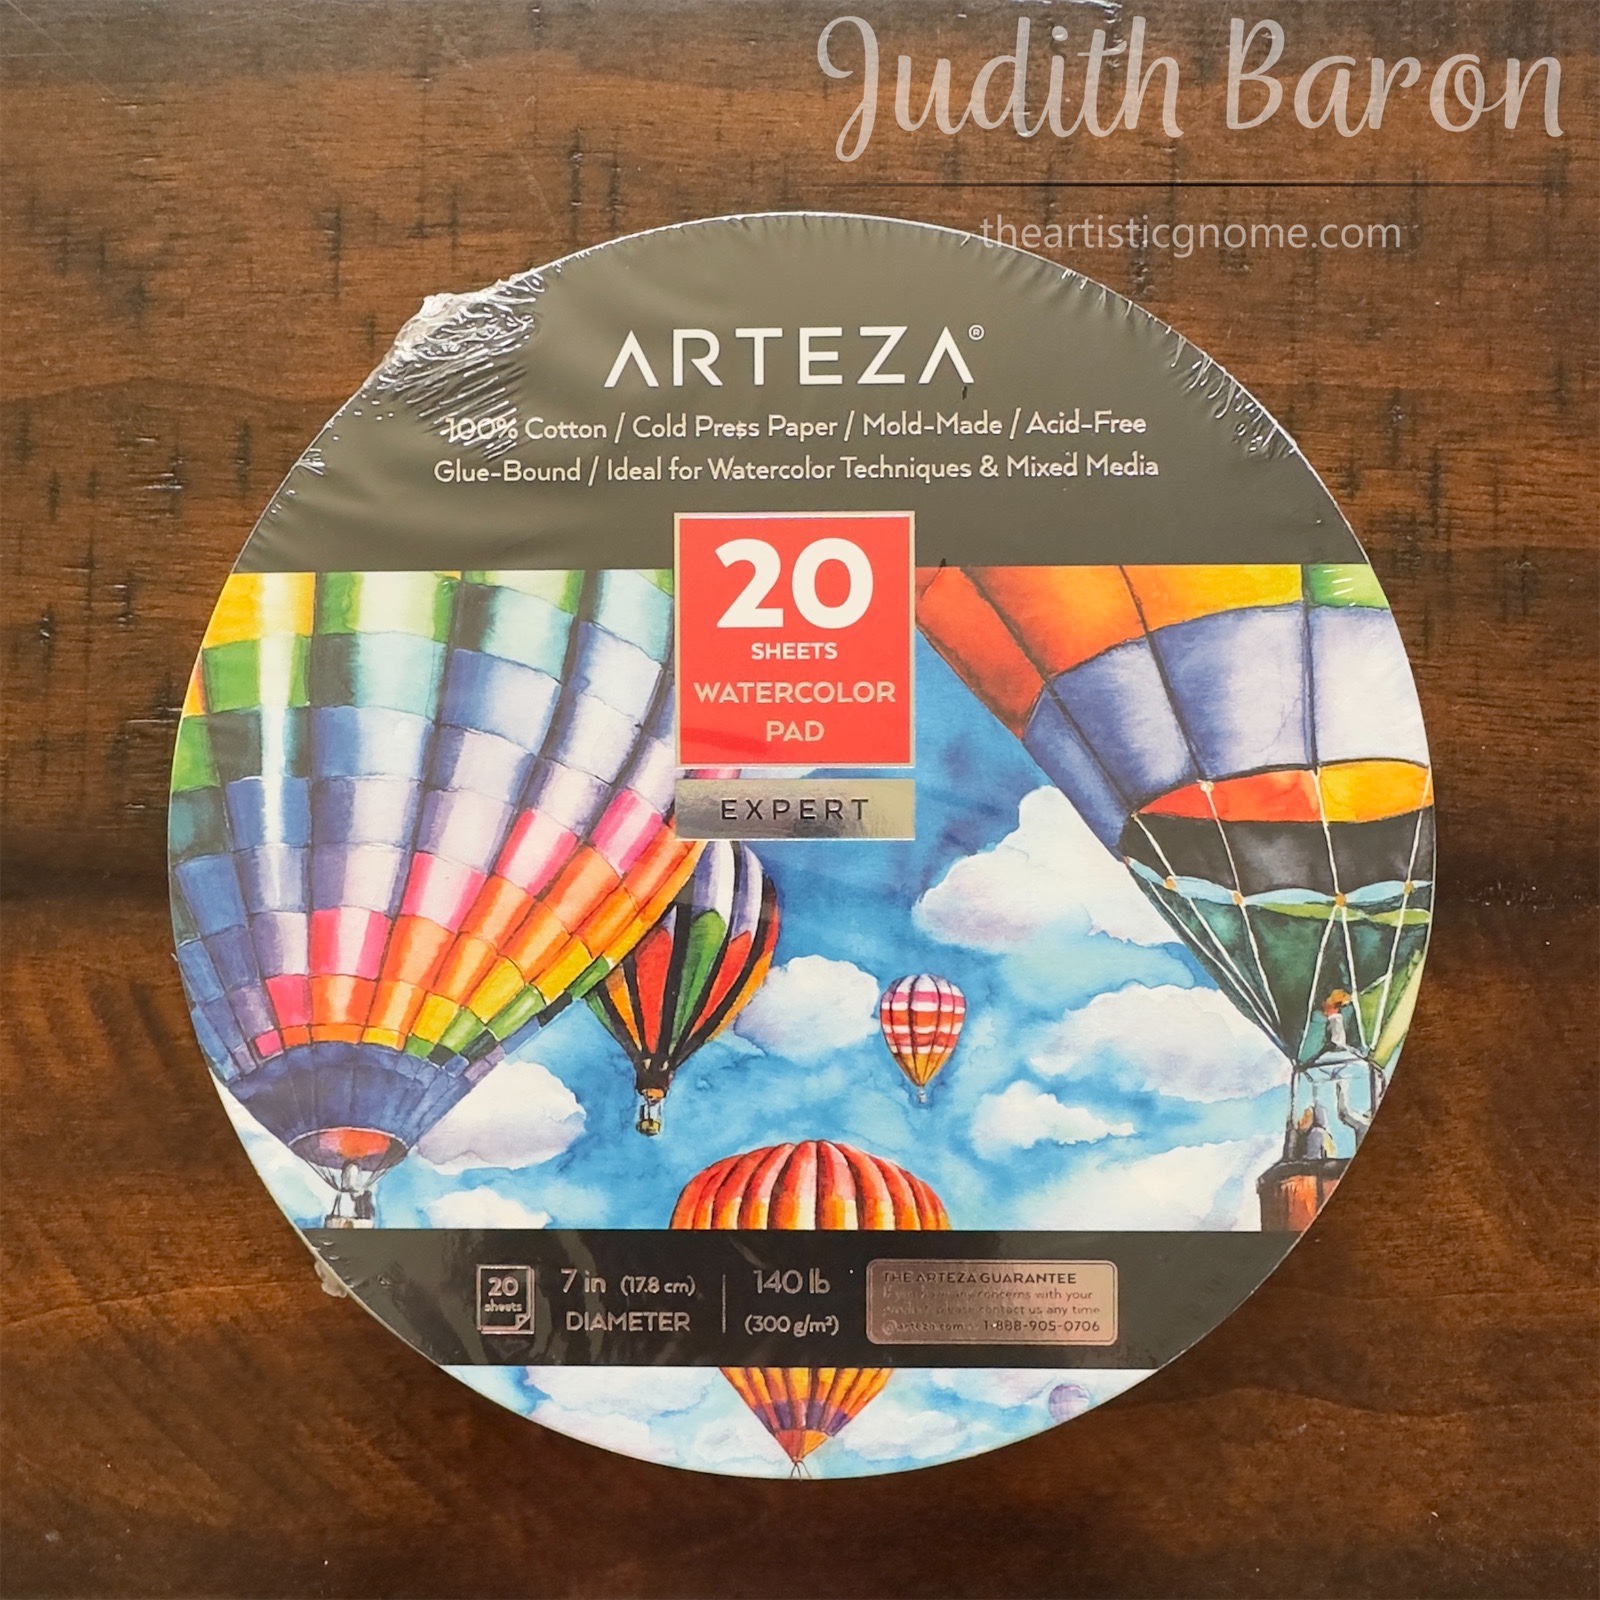 Arteza Cotton Paper Review - The Artistic Gnome Blog